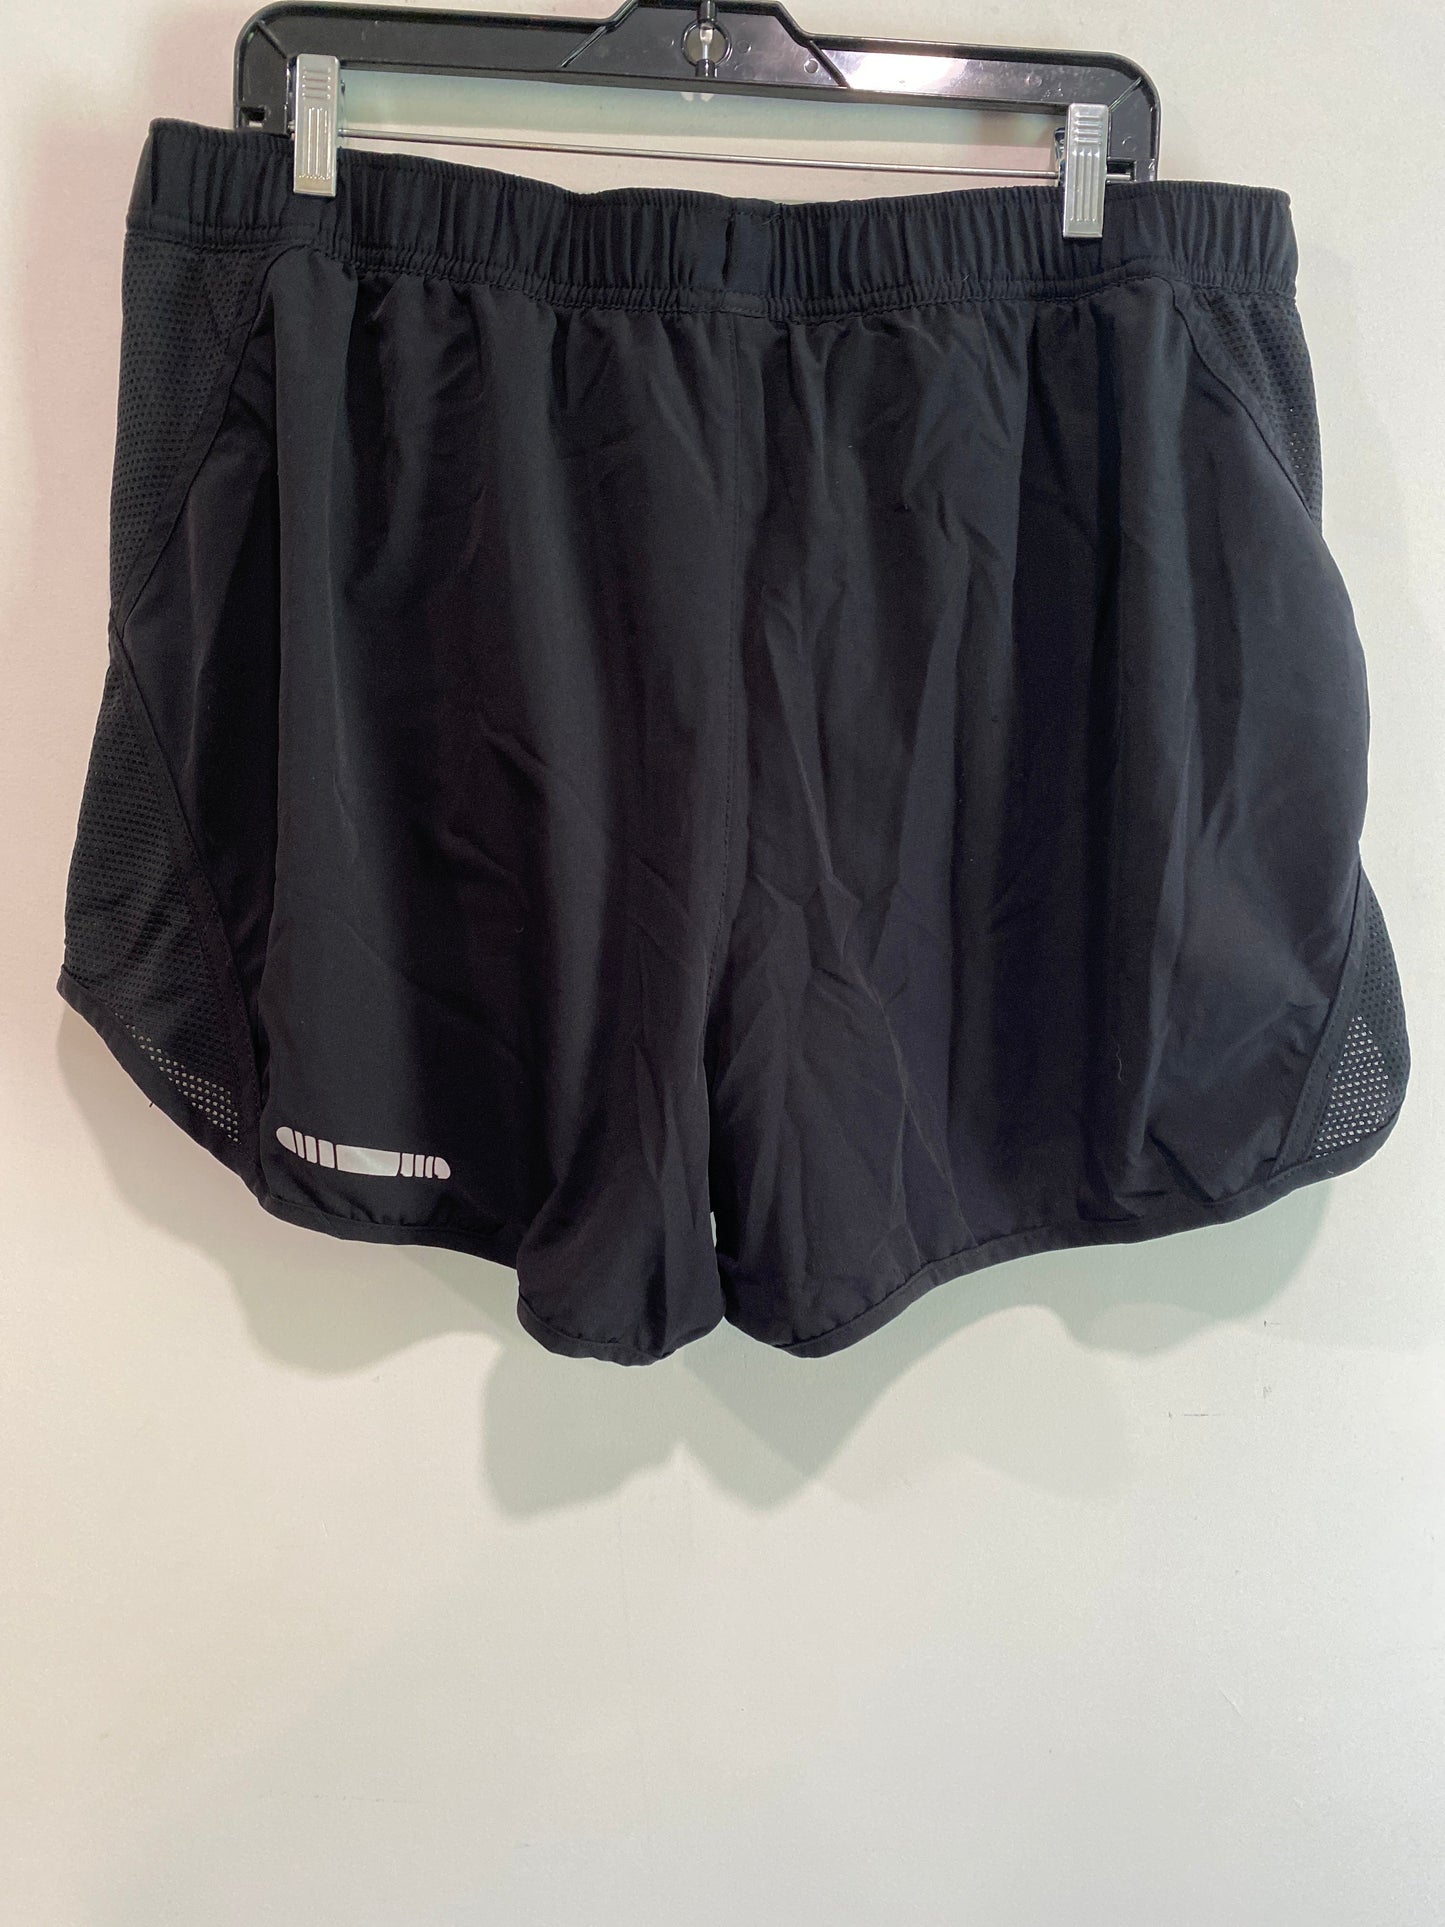 Black Athletic Shorts Bcg, Size 1x